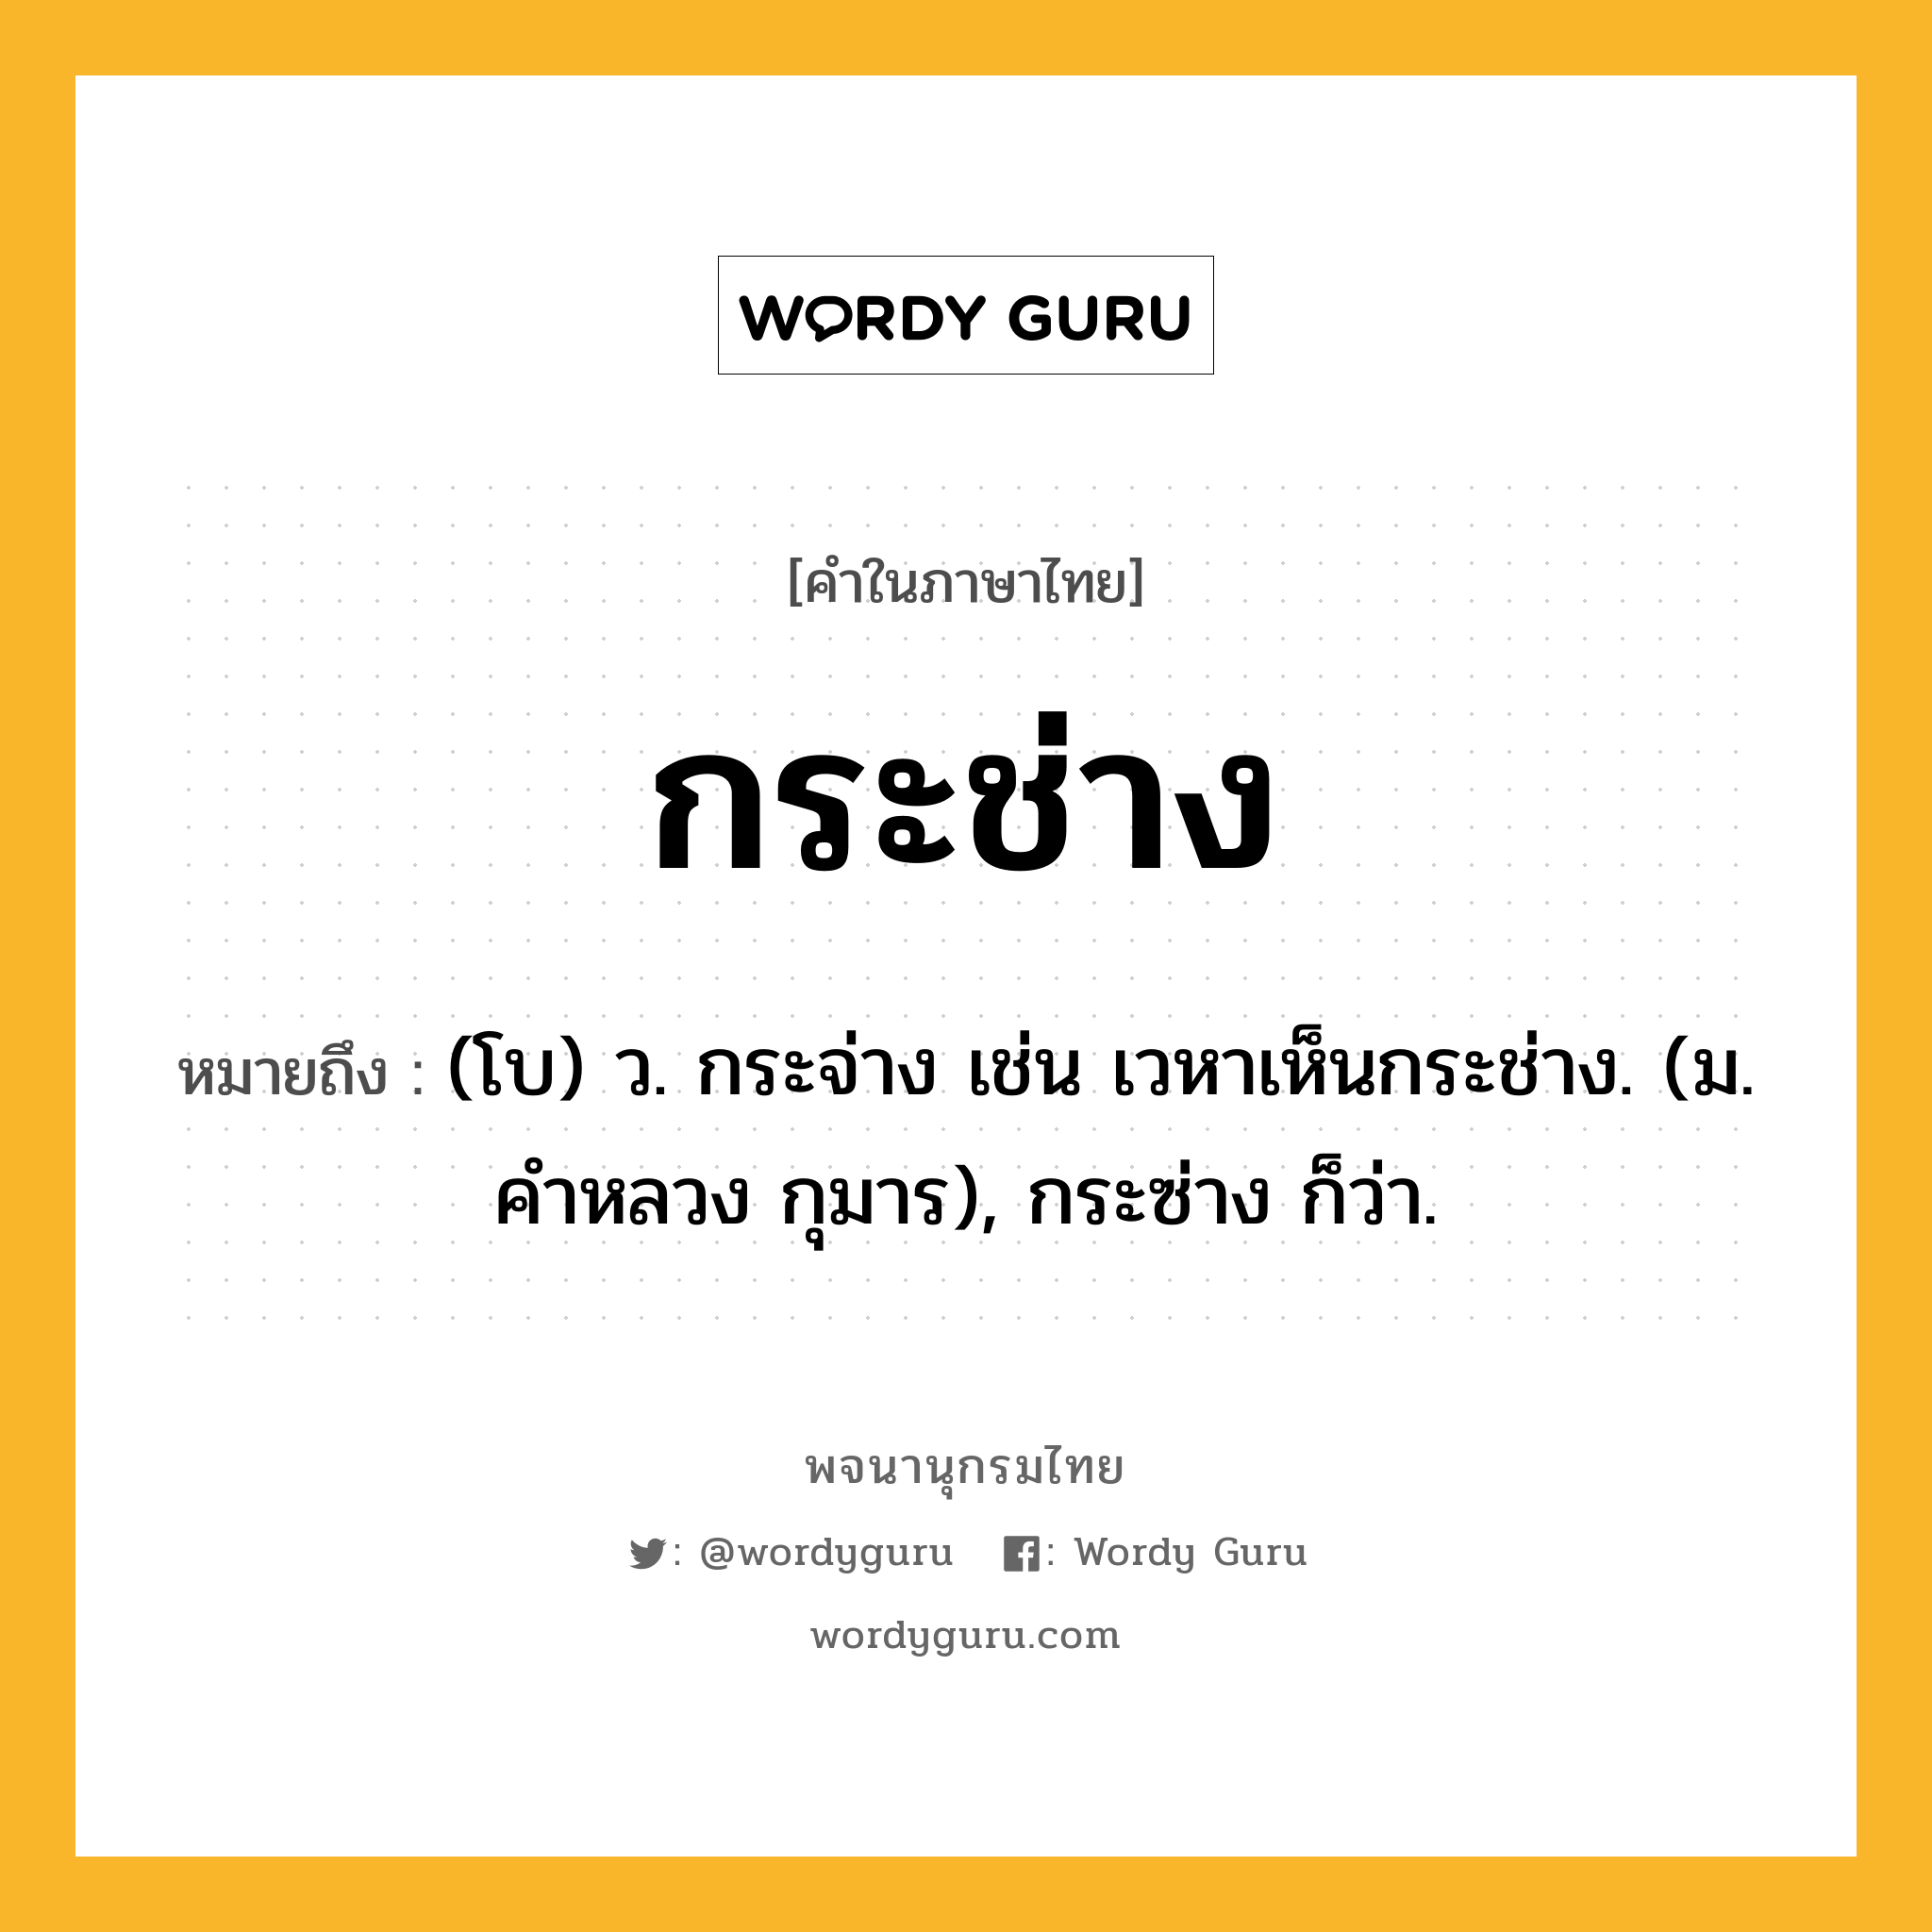 กระช่าง หมายถึงอะไร?, คำในภาษาไทย กระช่าง หมายถึง (โบ) ว. กระจ่าง เช่น เวหาเห็นกระช่าง. (ม. คําหลวง กุมาร), กระซ่าง ก็ว่า.